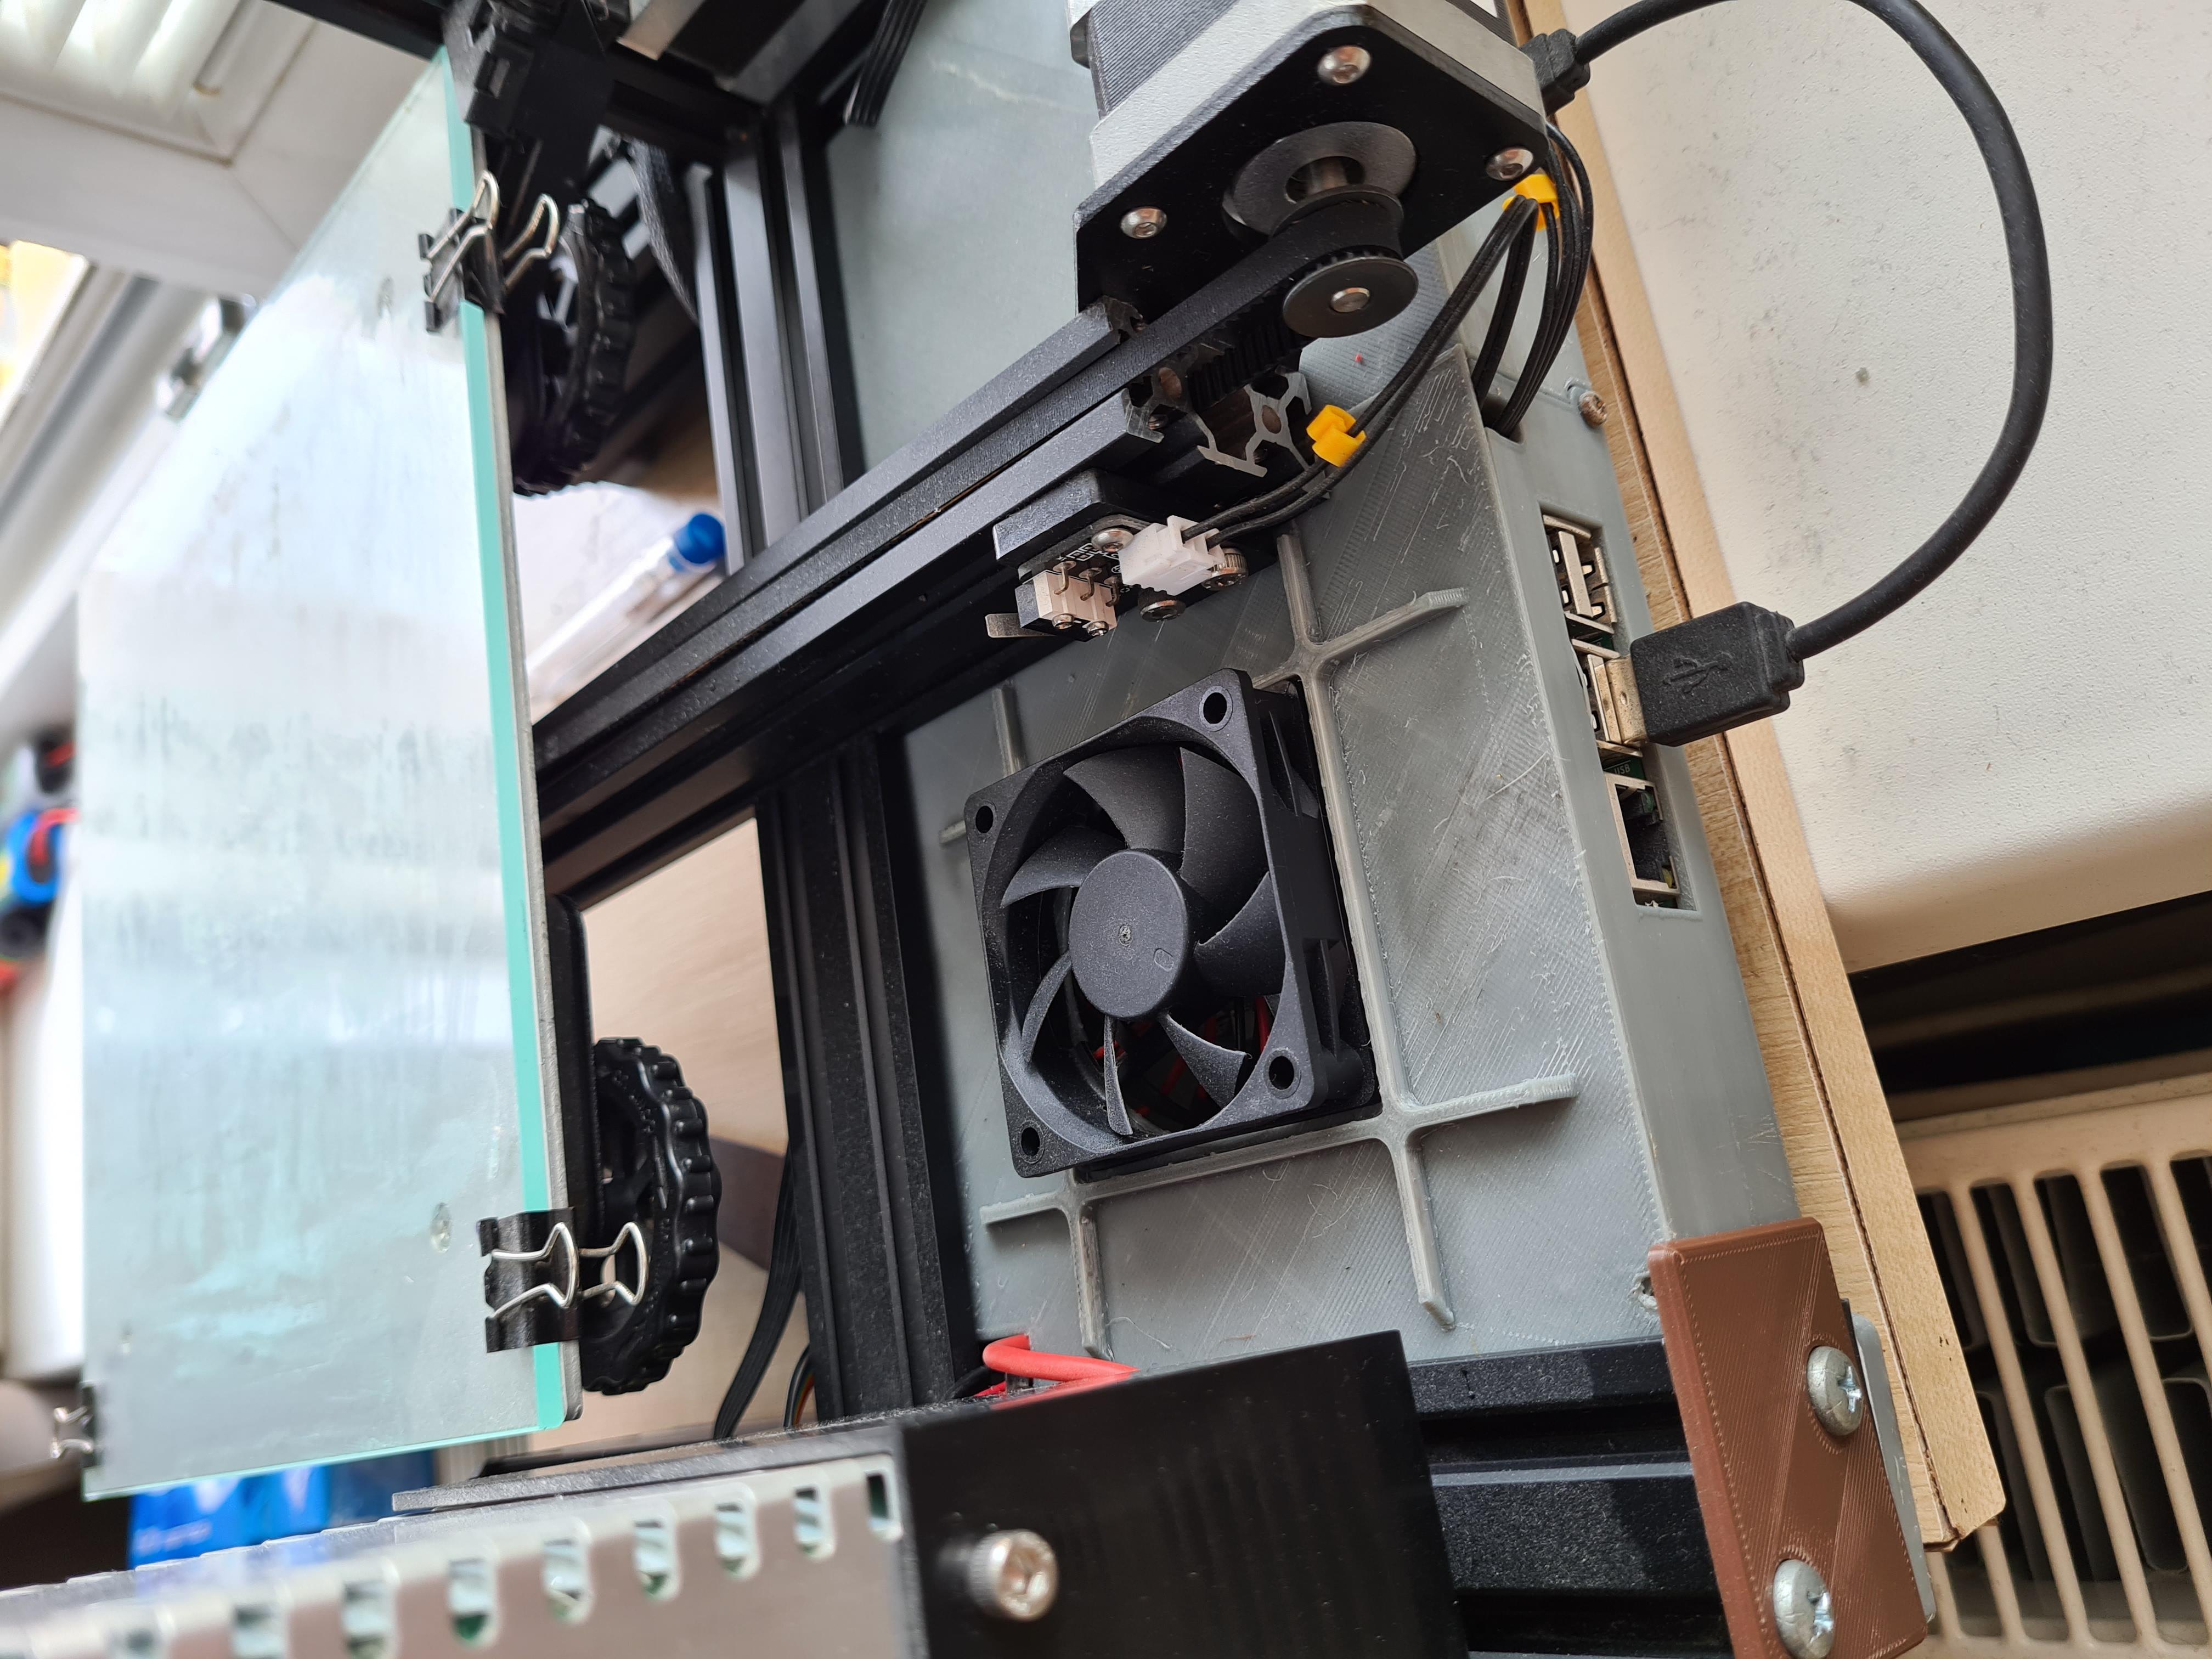 Ender 3 rear electronics case with 60mm fan